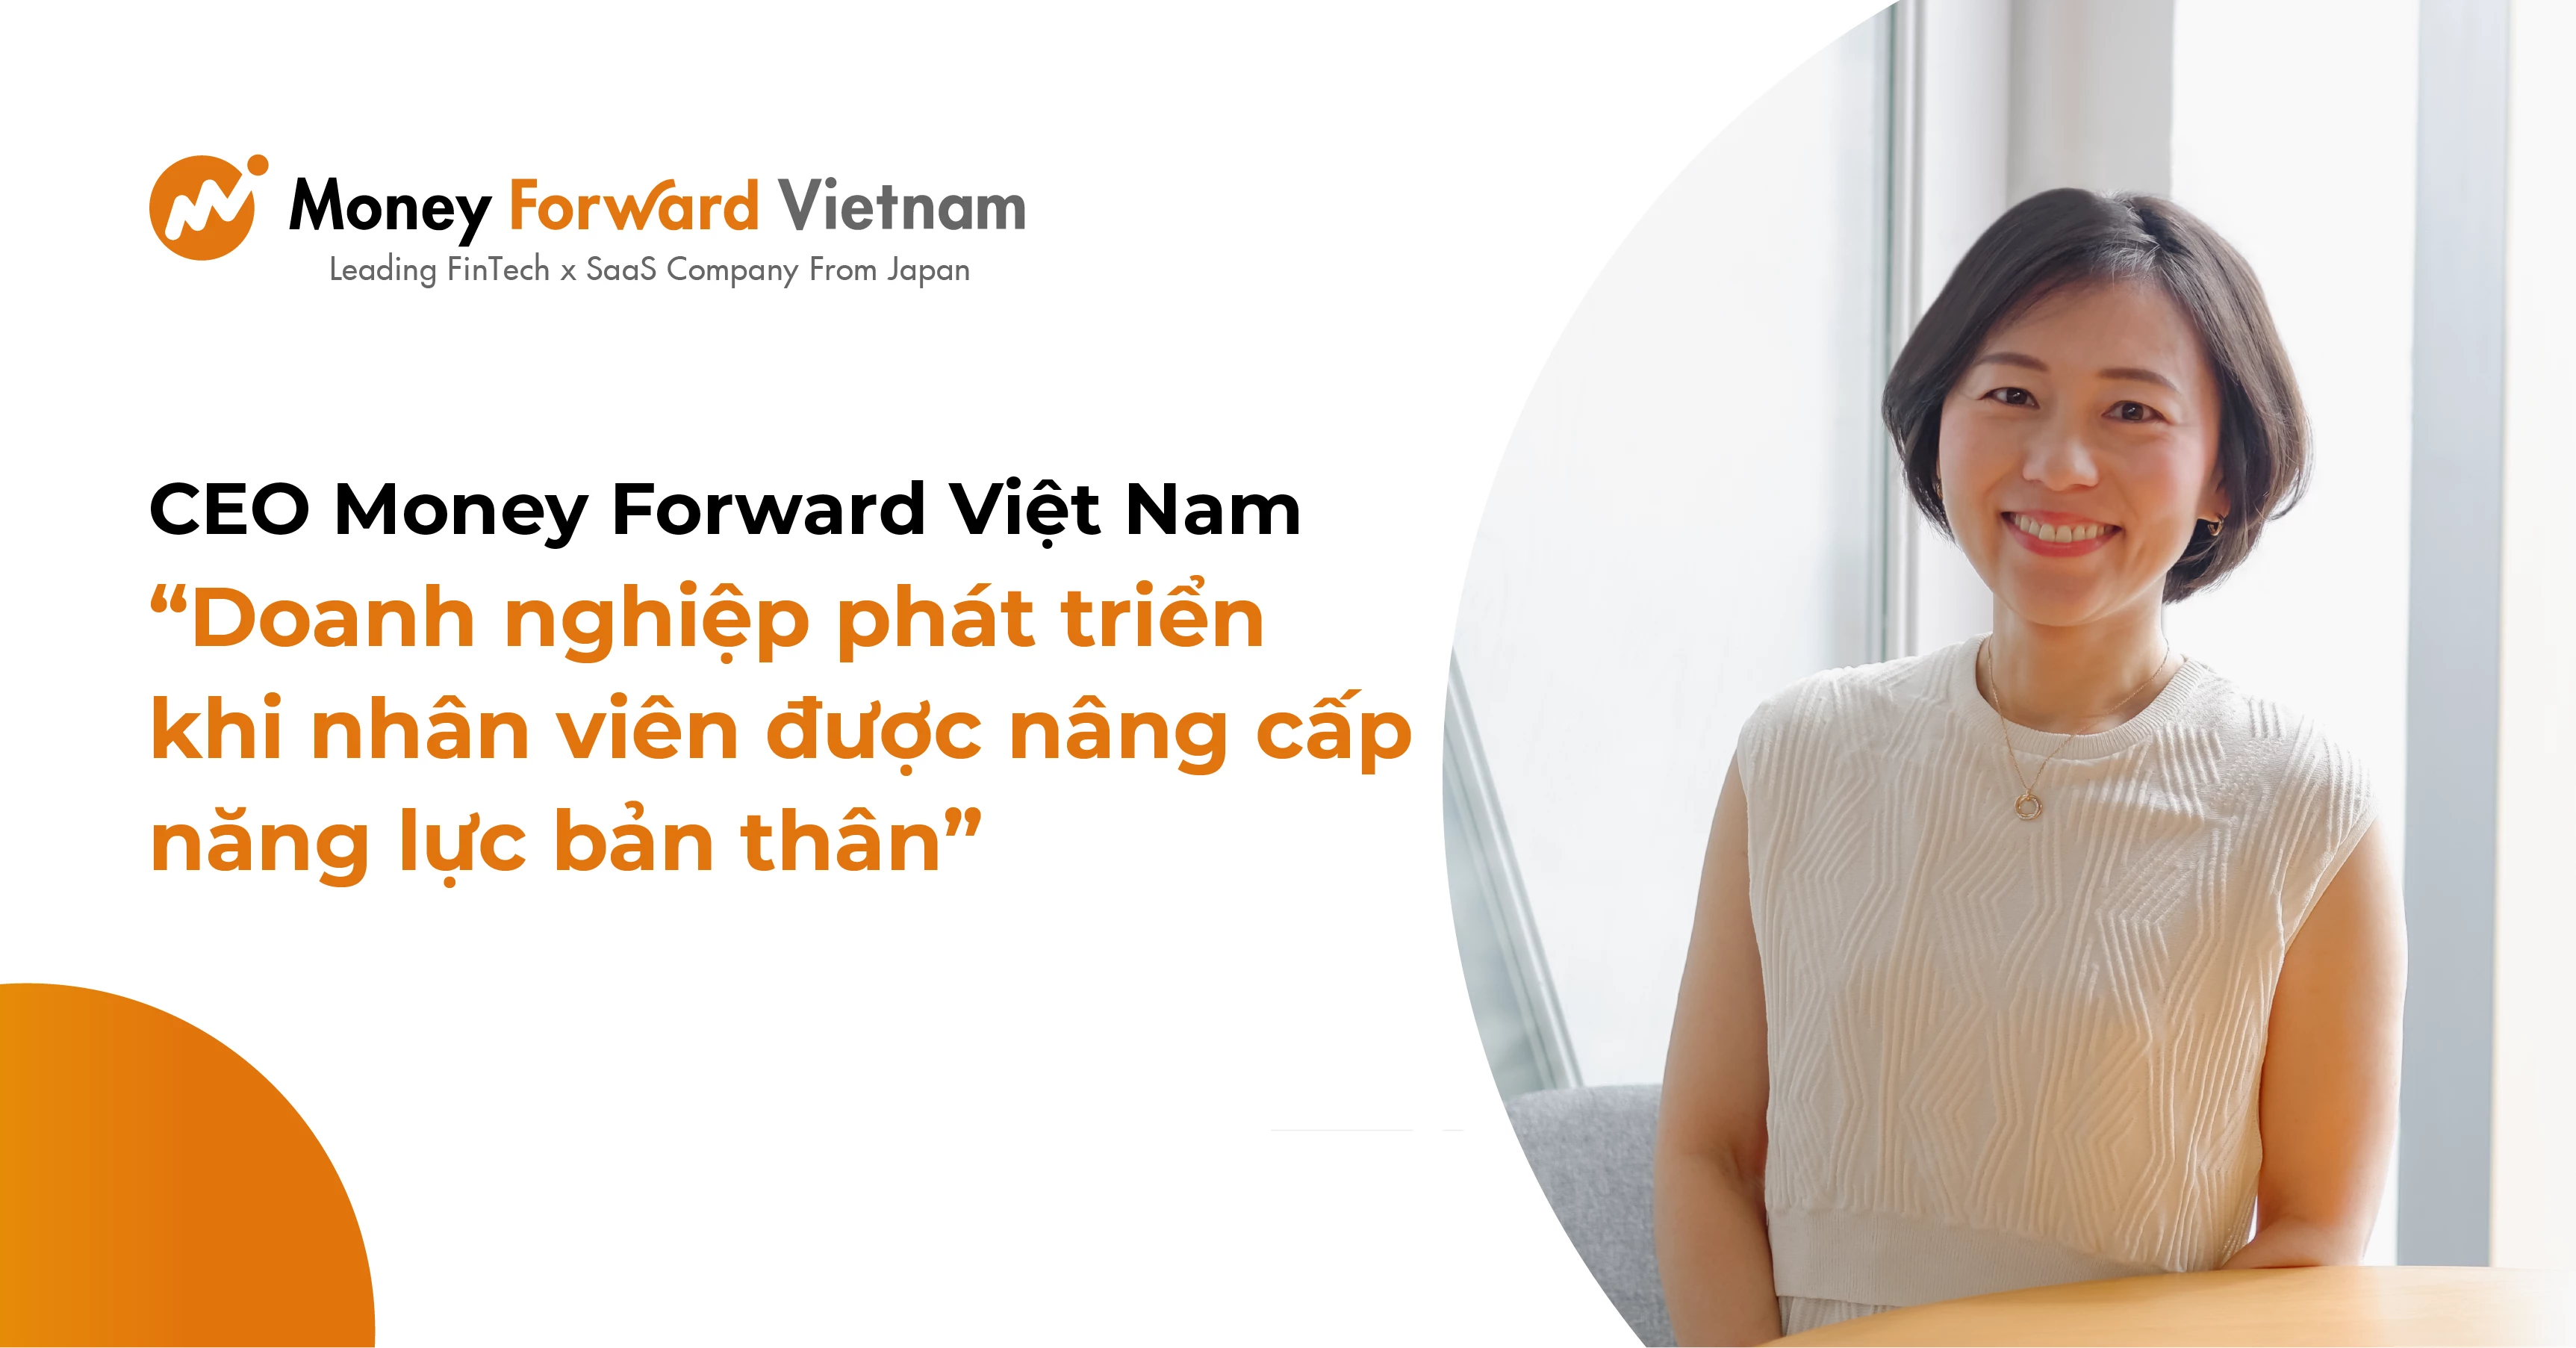 CEO Money Forward Việt Nam: “Doanh nghiệp phát triển khi nhân viên được nâng cấp năng lực bản thân”